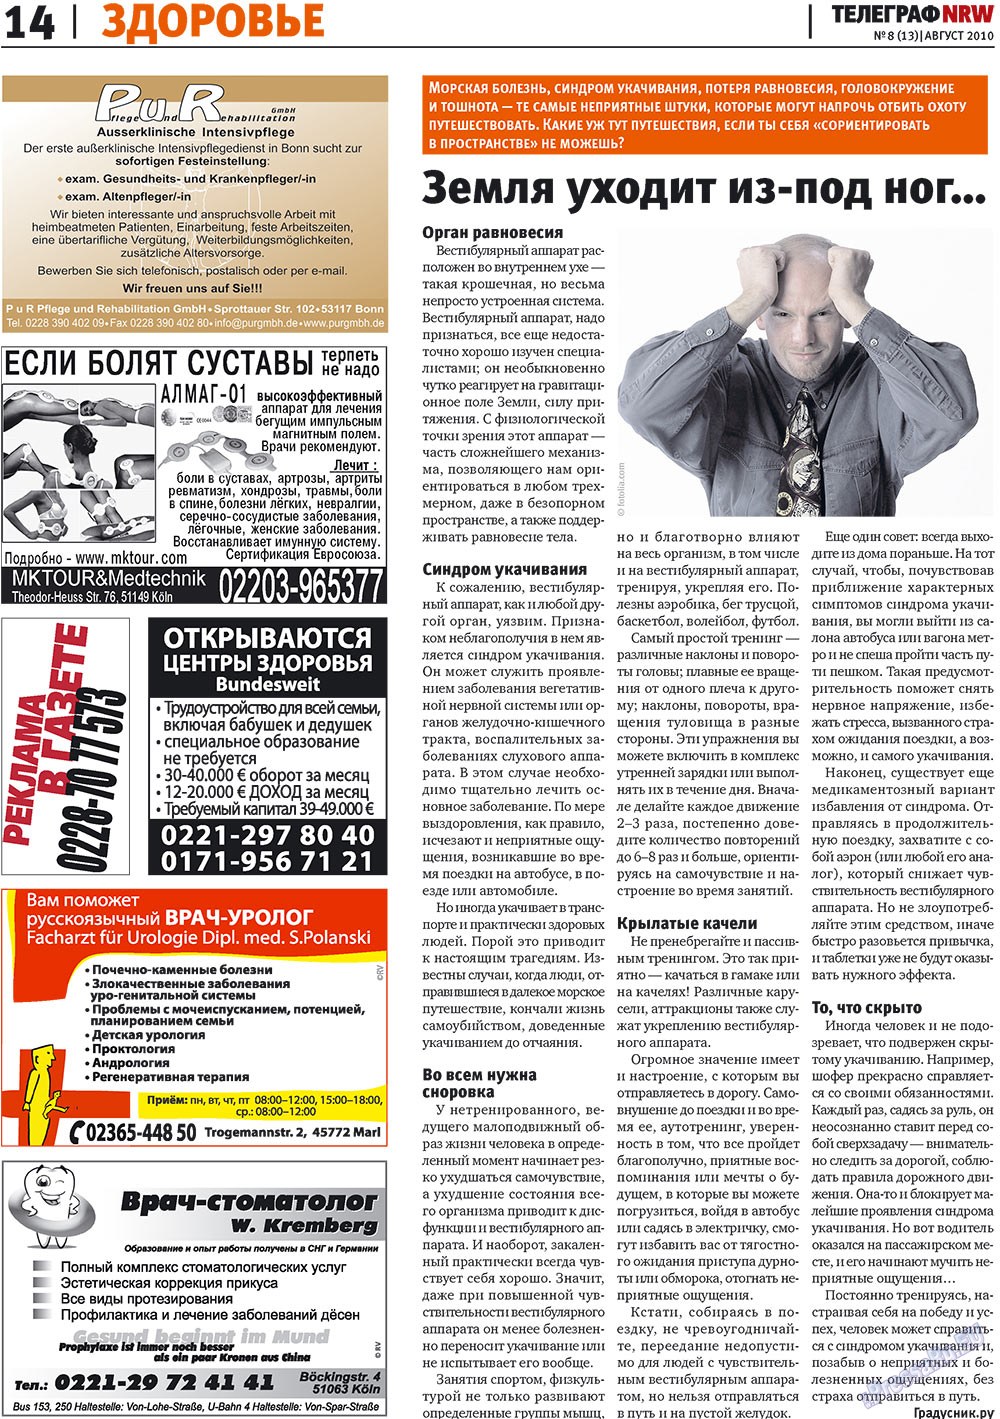 Телеграф NRW (газета). 2010 год, номер 8, стр. 14